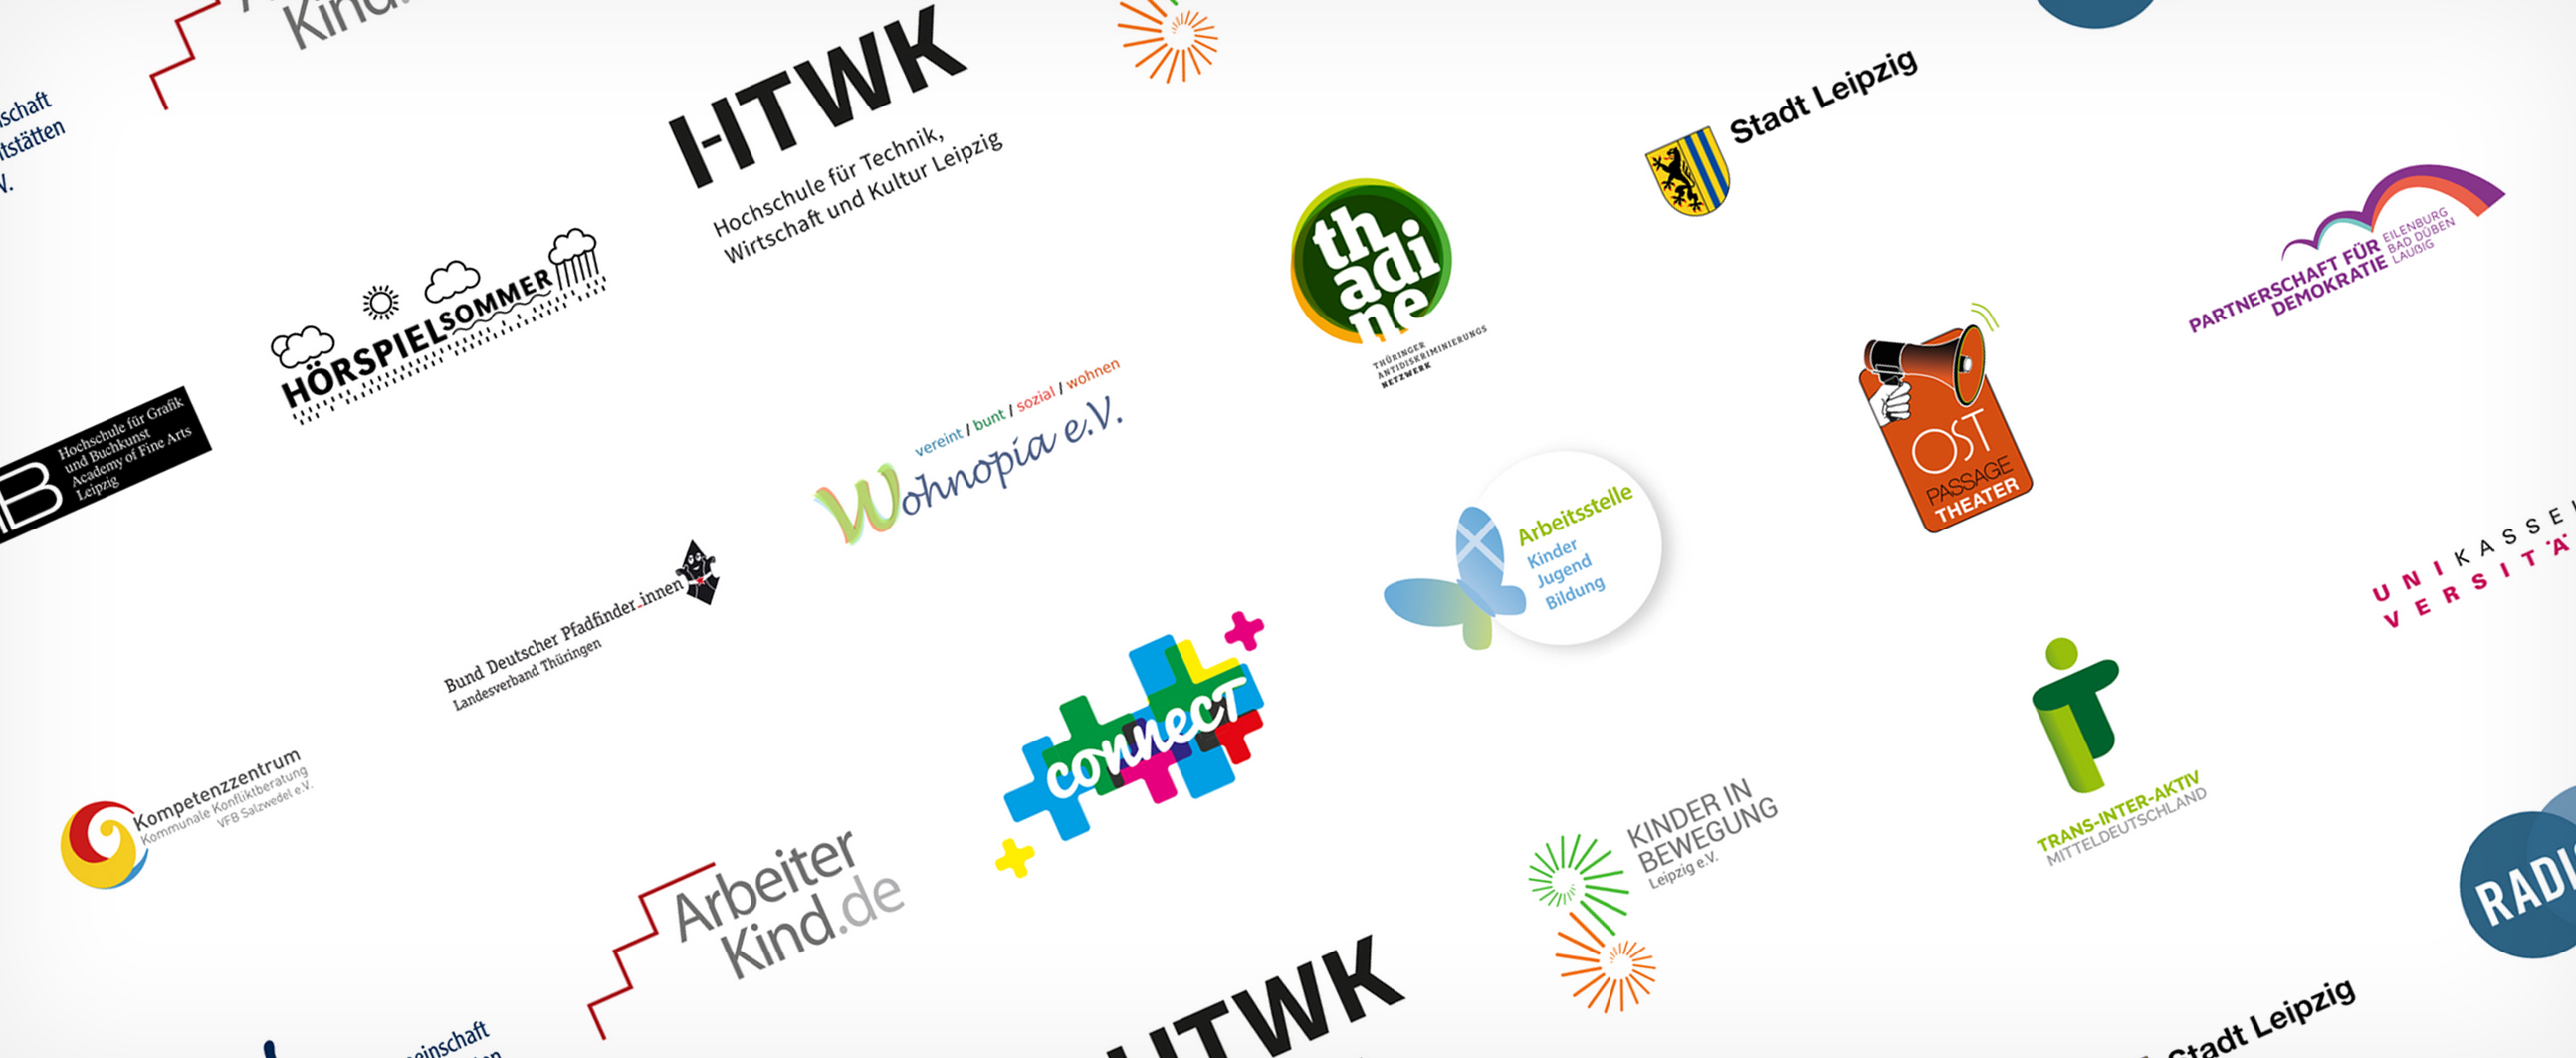 Auf weißem Hintergrund sind verschiedene Logos zu sehen. Erkennbar sind: Hörspielsommer, HTWK, Wohnopia e.V., thadine, Stadt Leipzig, ArbeiterKind.de, connect, OPT und Radio Blau.